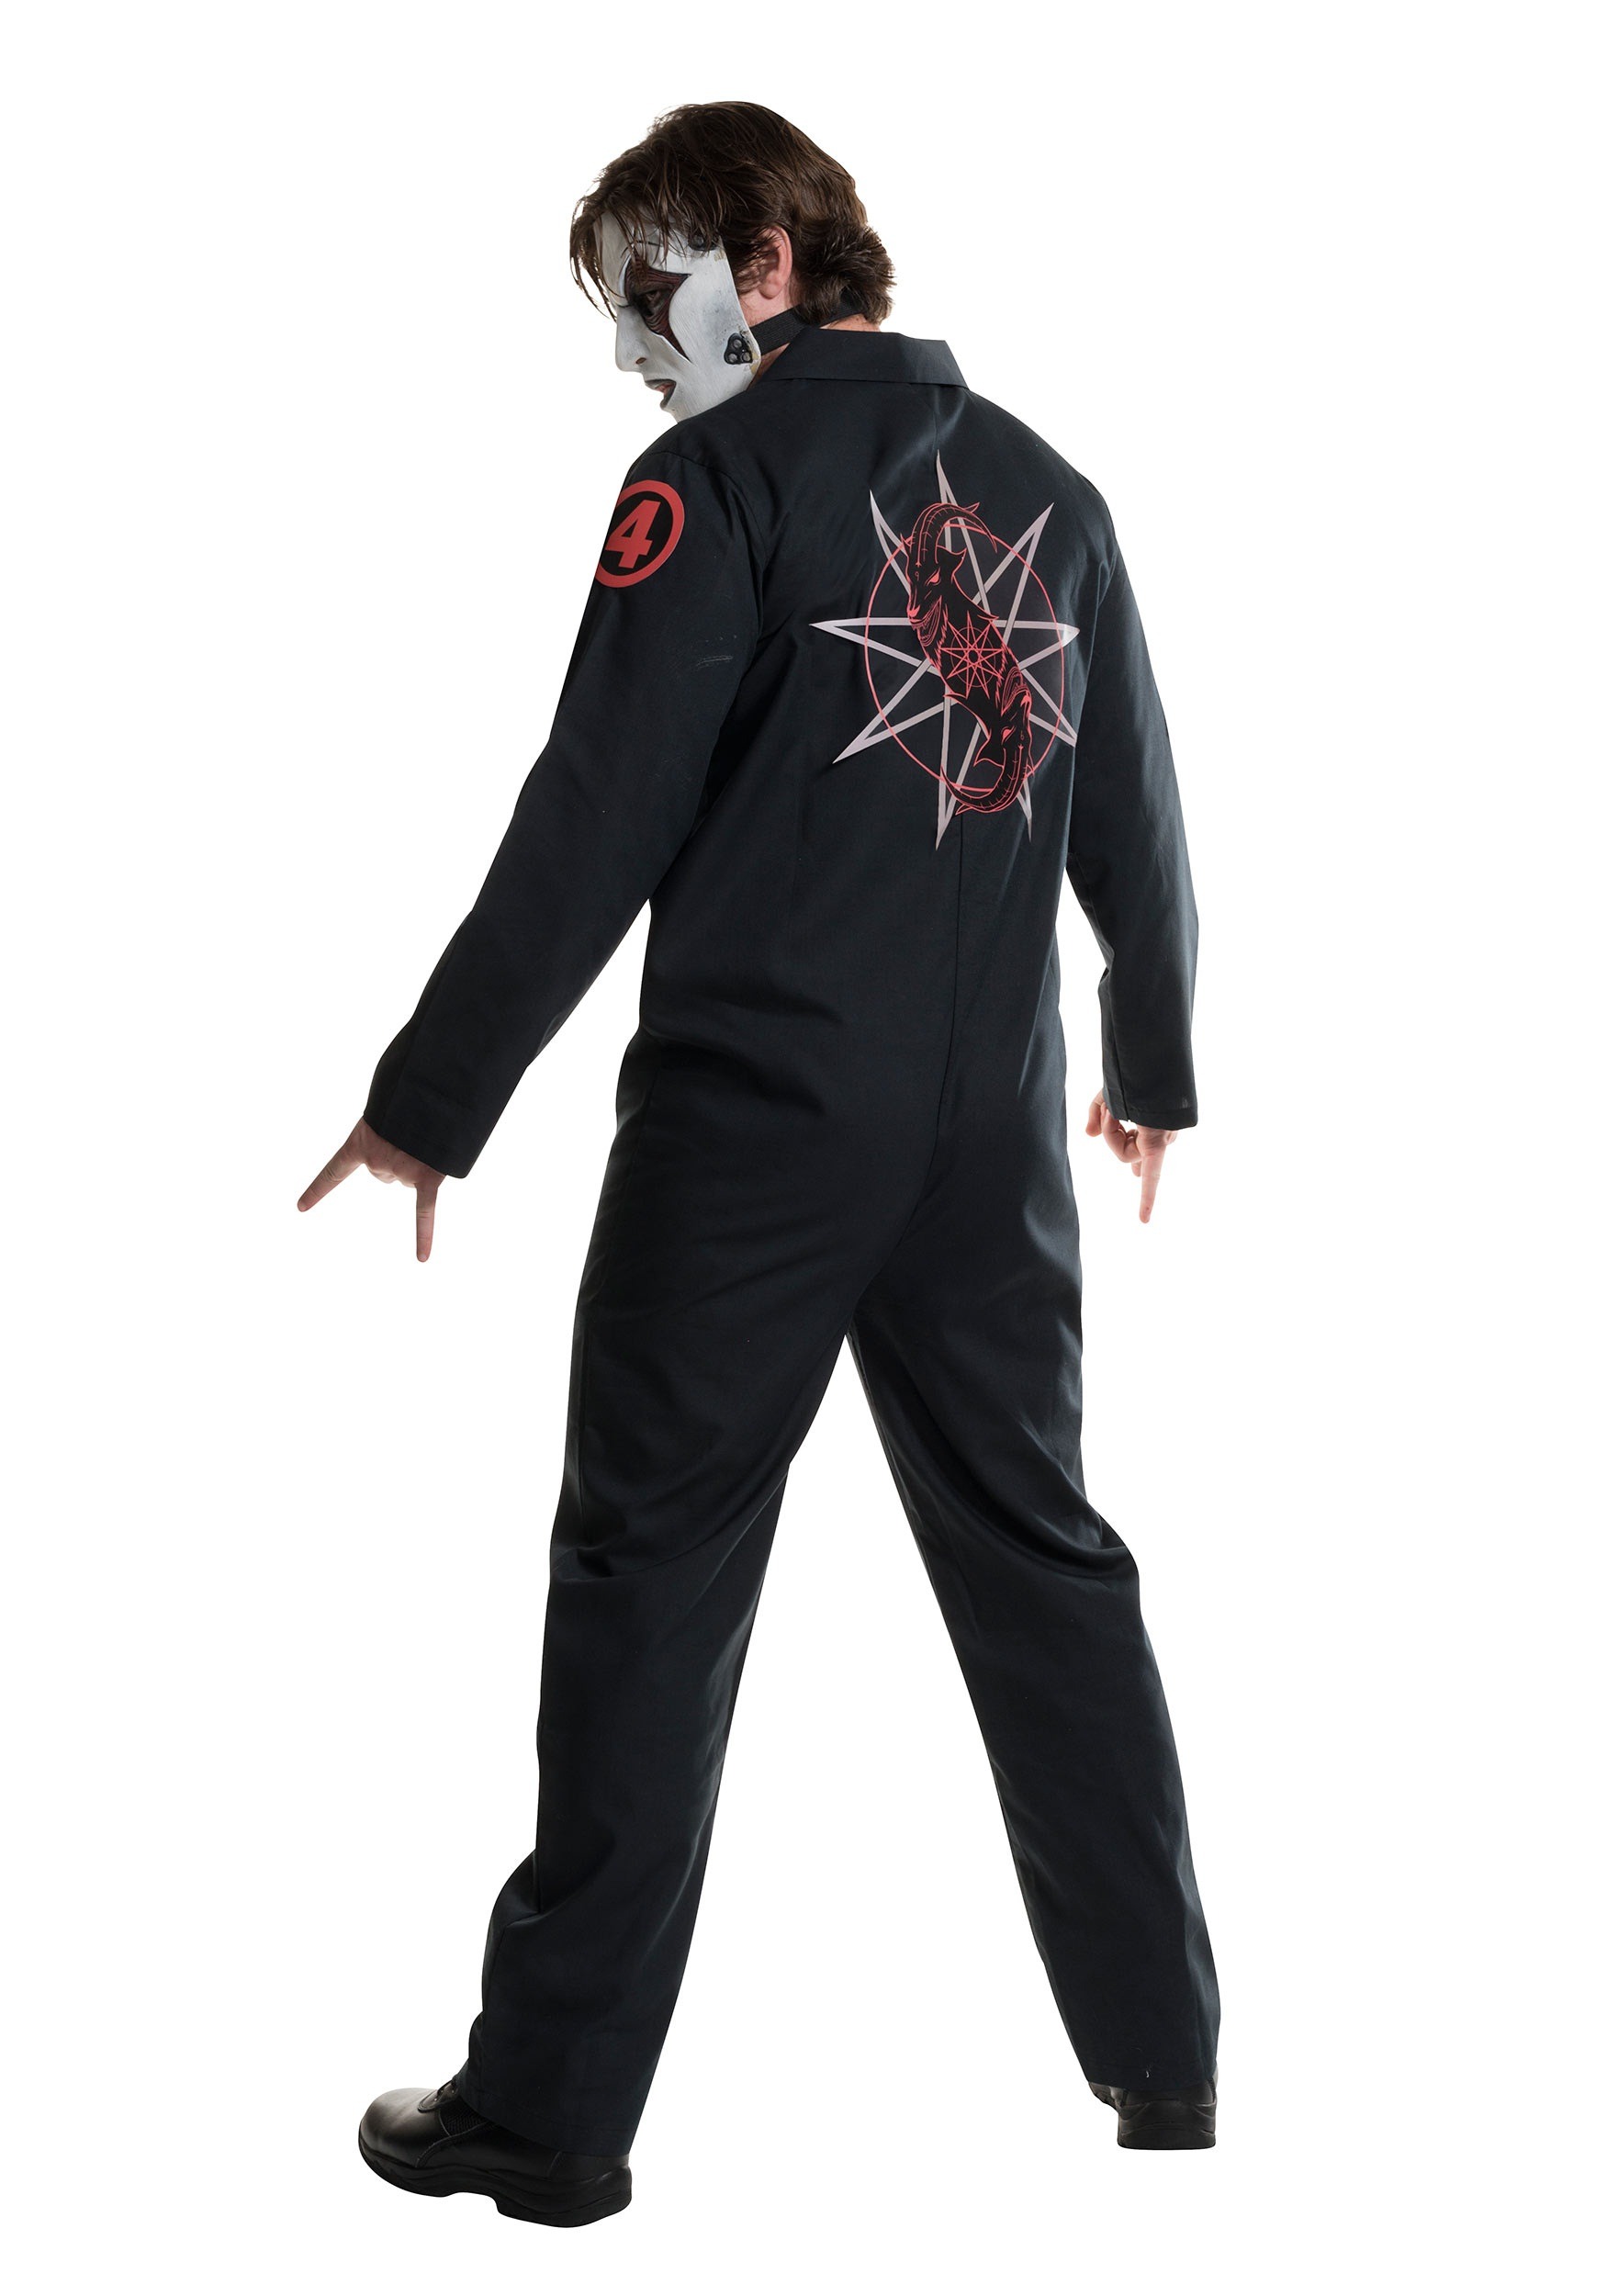 Slipknot Slipknot Jumpsuits Halloween Costume With Licensed Jumpsuits Slipk...